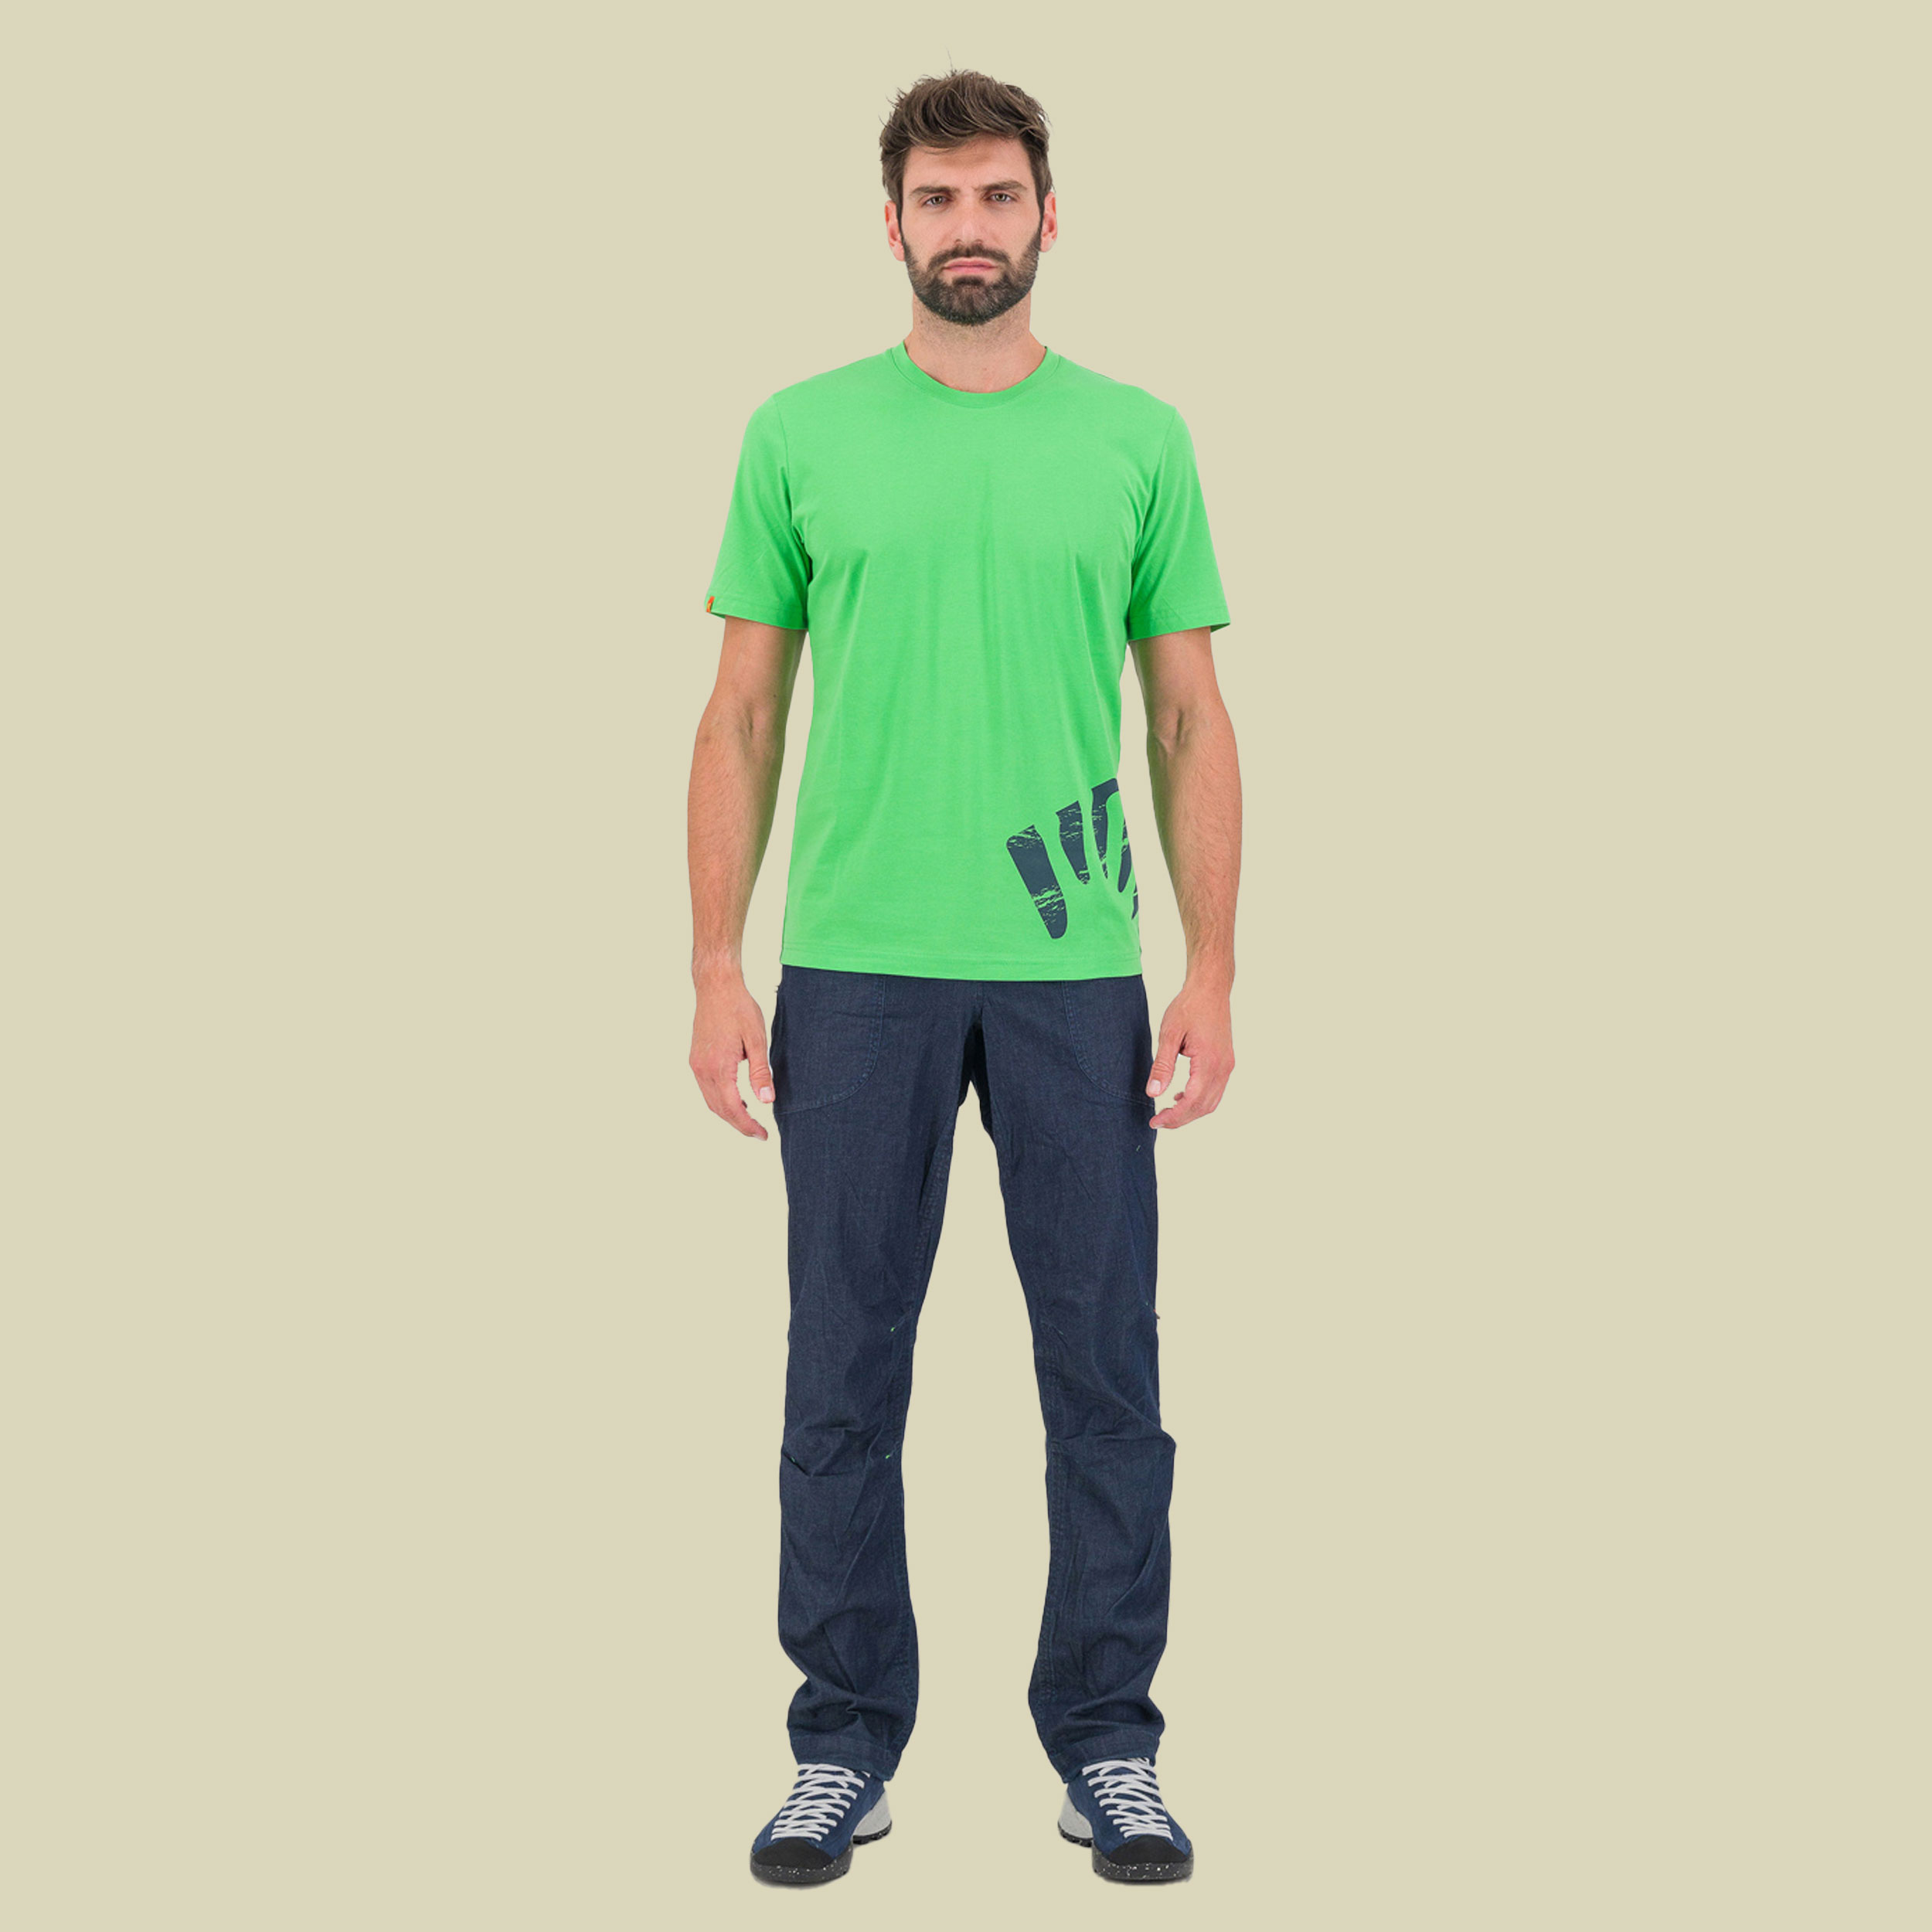 Astro Alpino T-Shirt Men Größe M  Farbe jasmine green